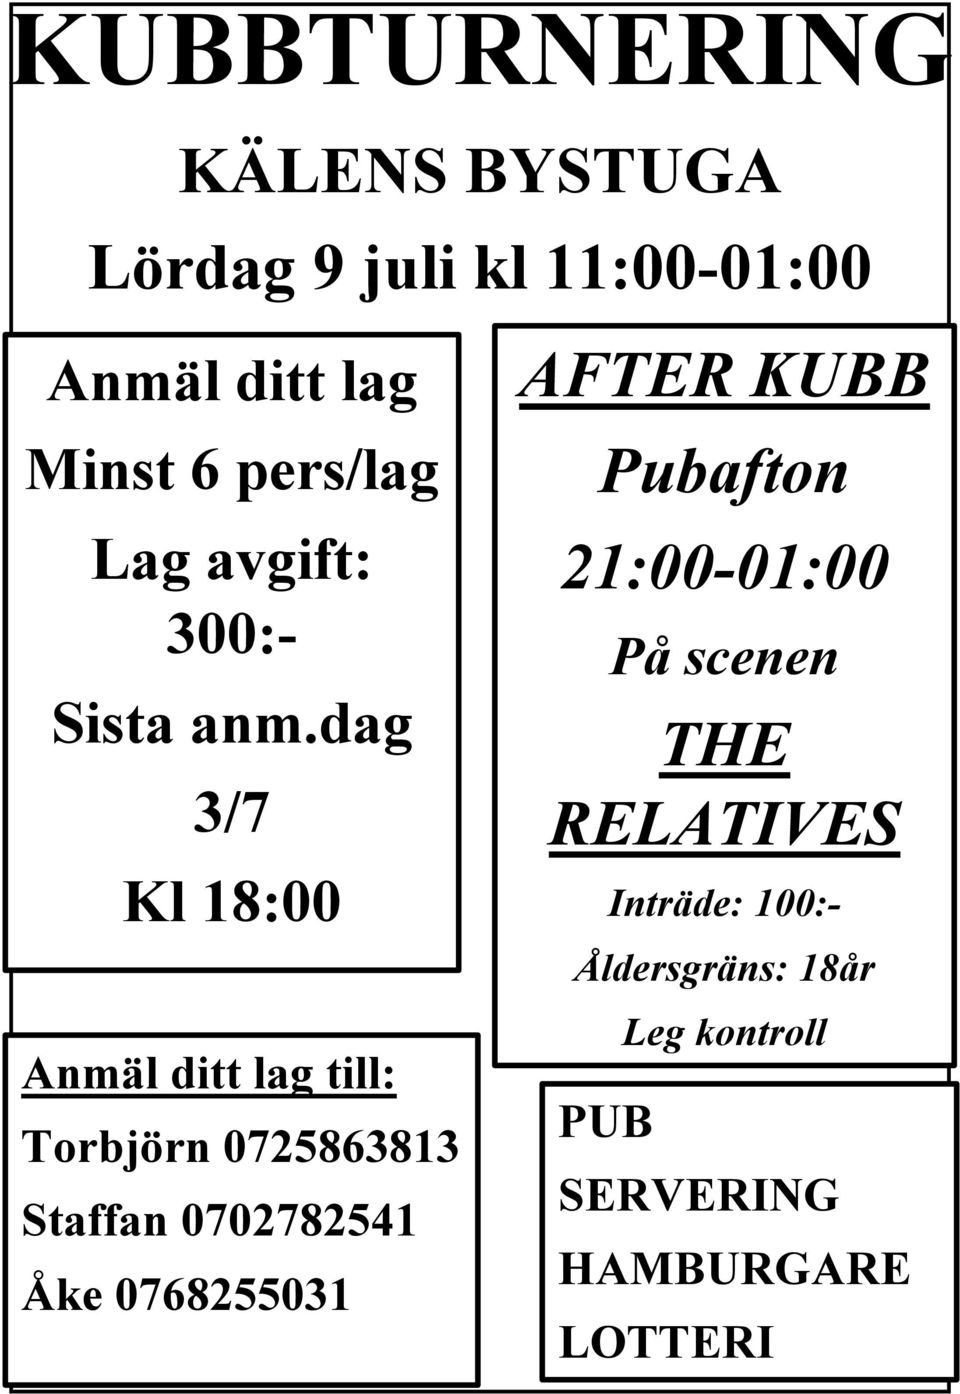 dag 3/7 Kl 18:00 Anmäl ditt lag till: Torbjörn 0725863813 Staffan 0702782541 Åke